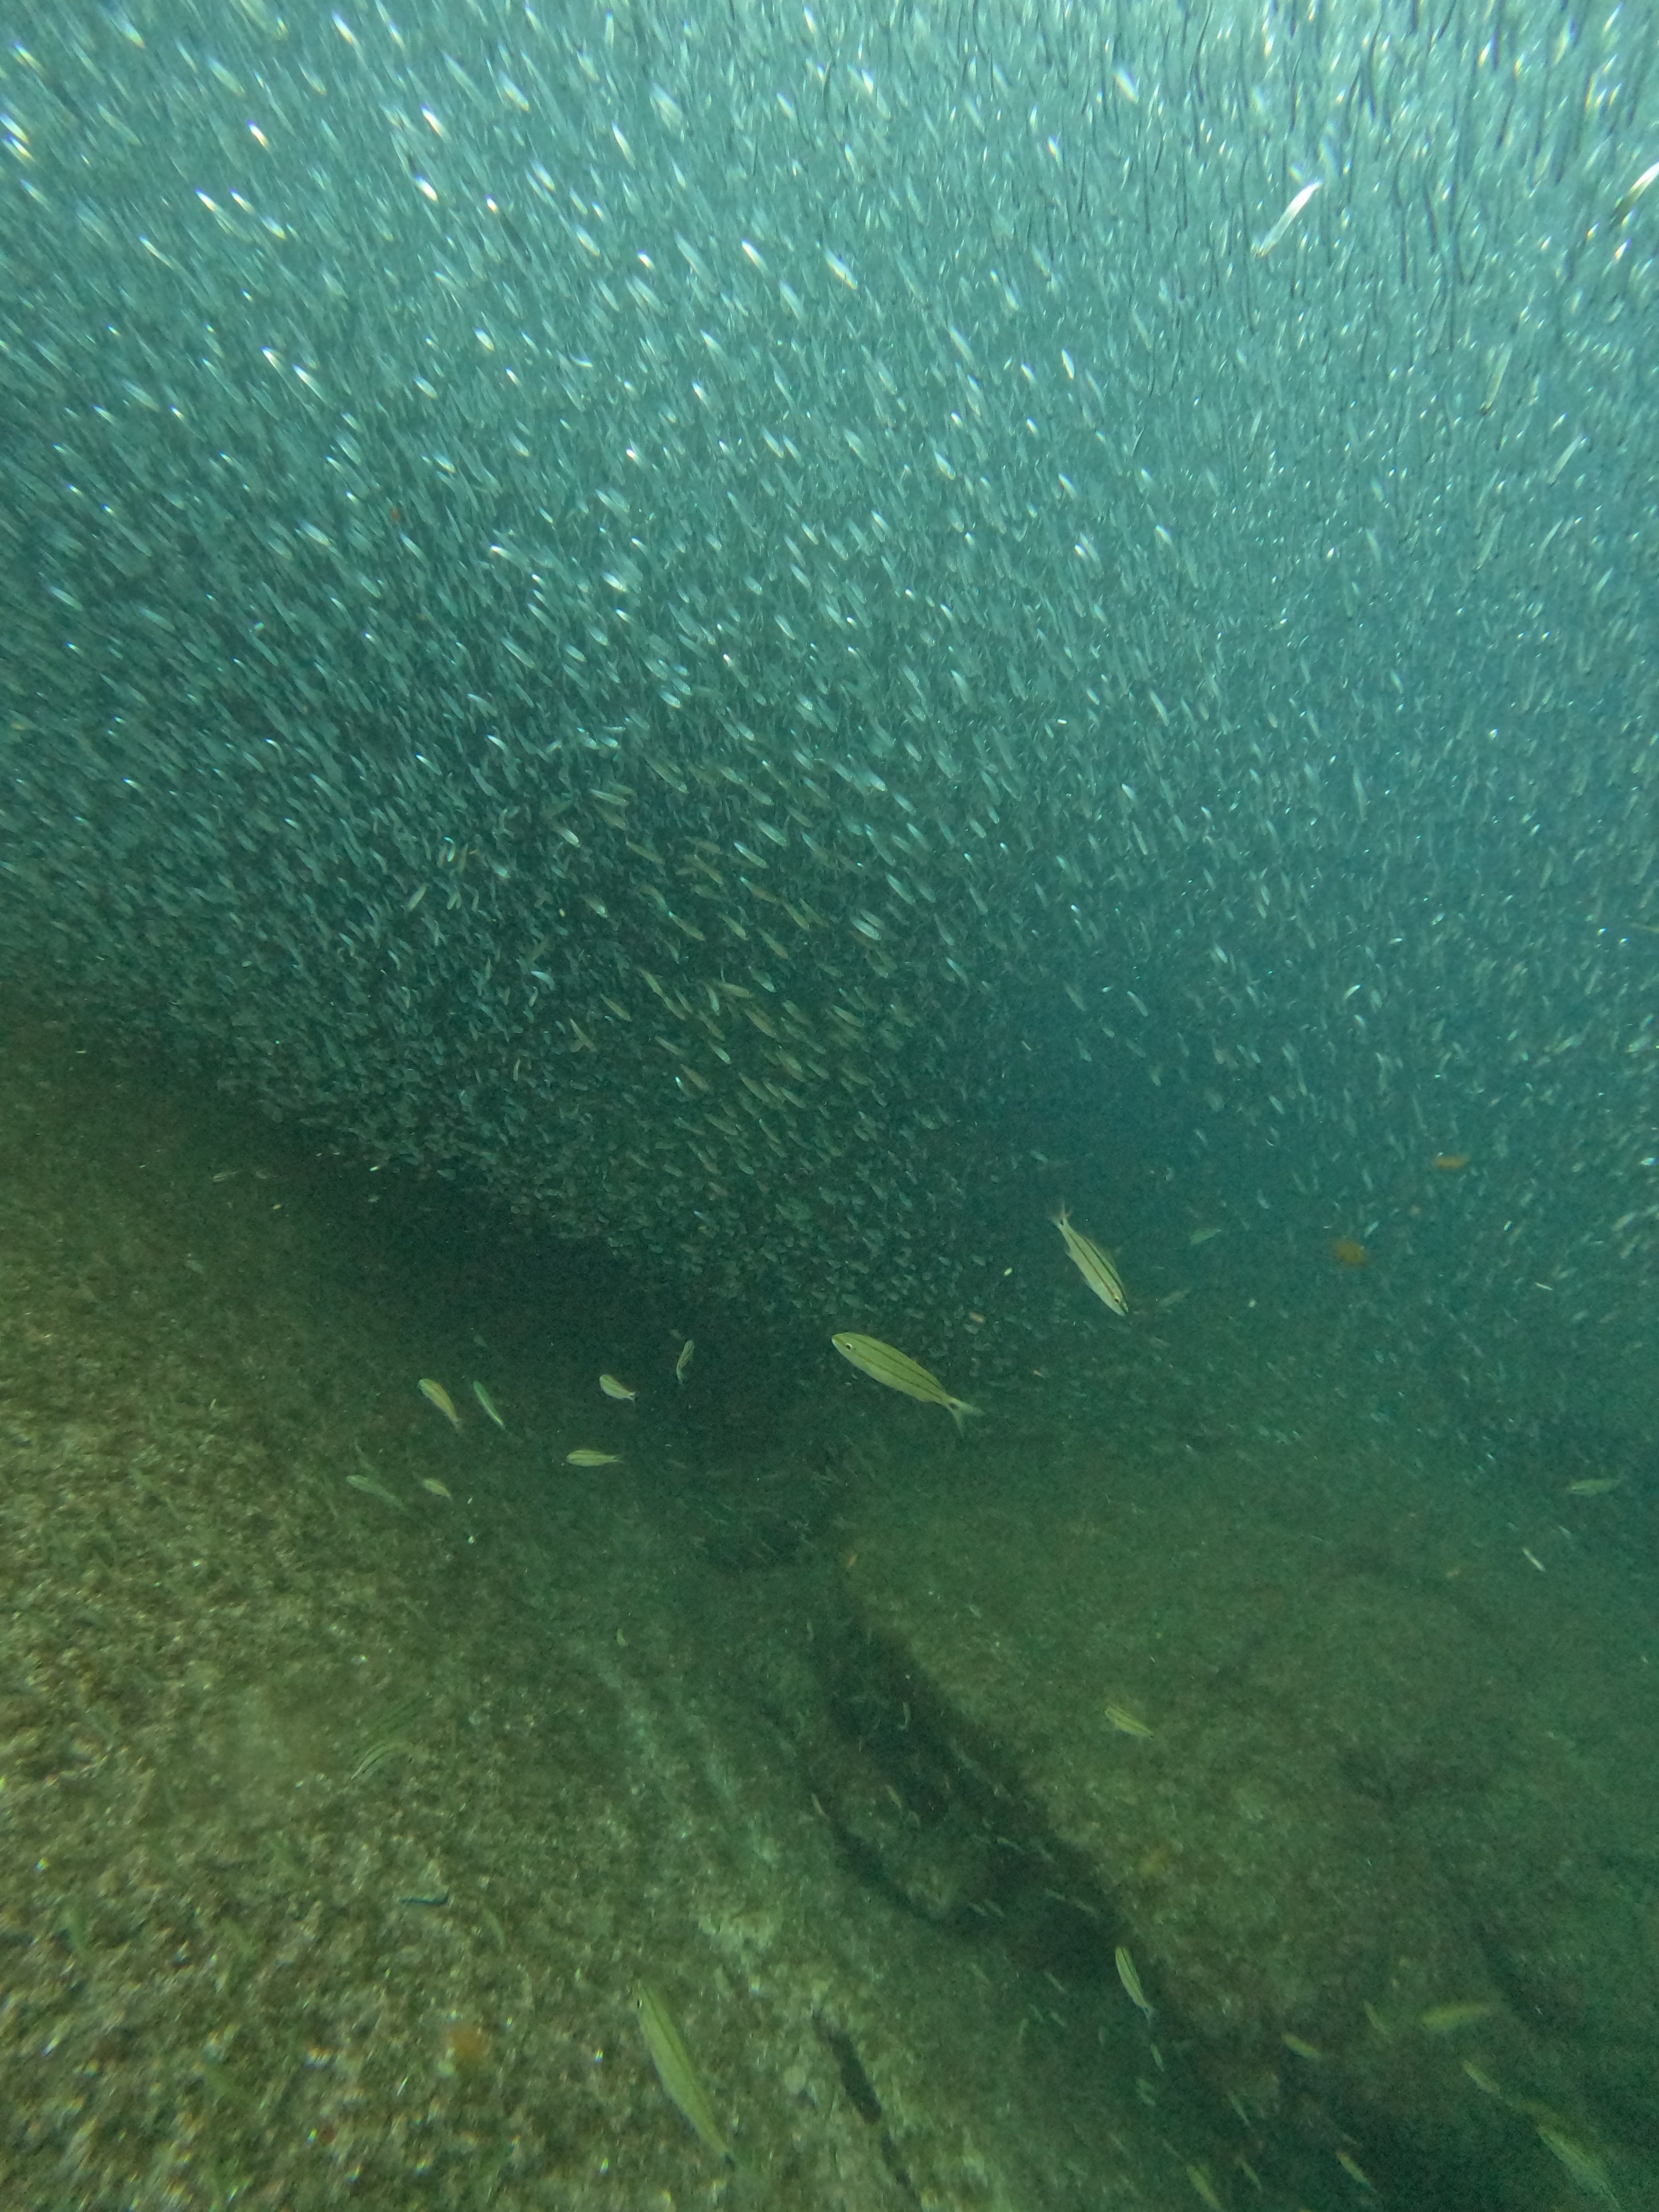 Biólogo mergulha em área de proteção e filma cardume de espécie ameaçada de extinção: 'de brilhar os olhos'; VÍDEO